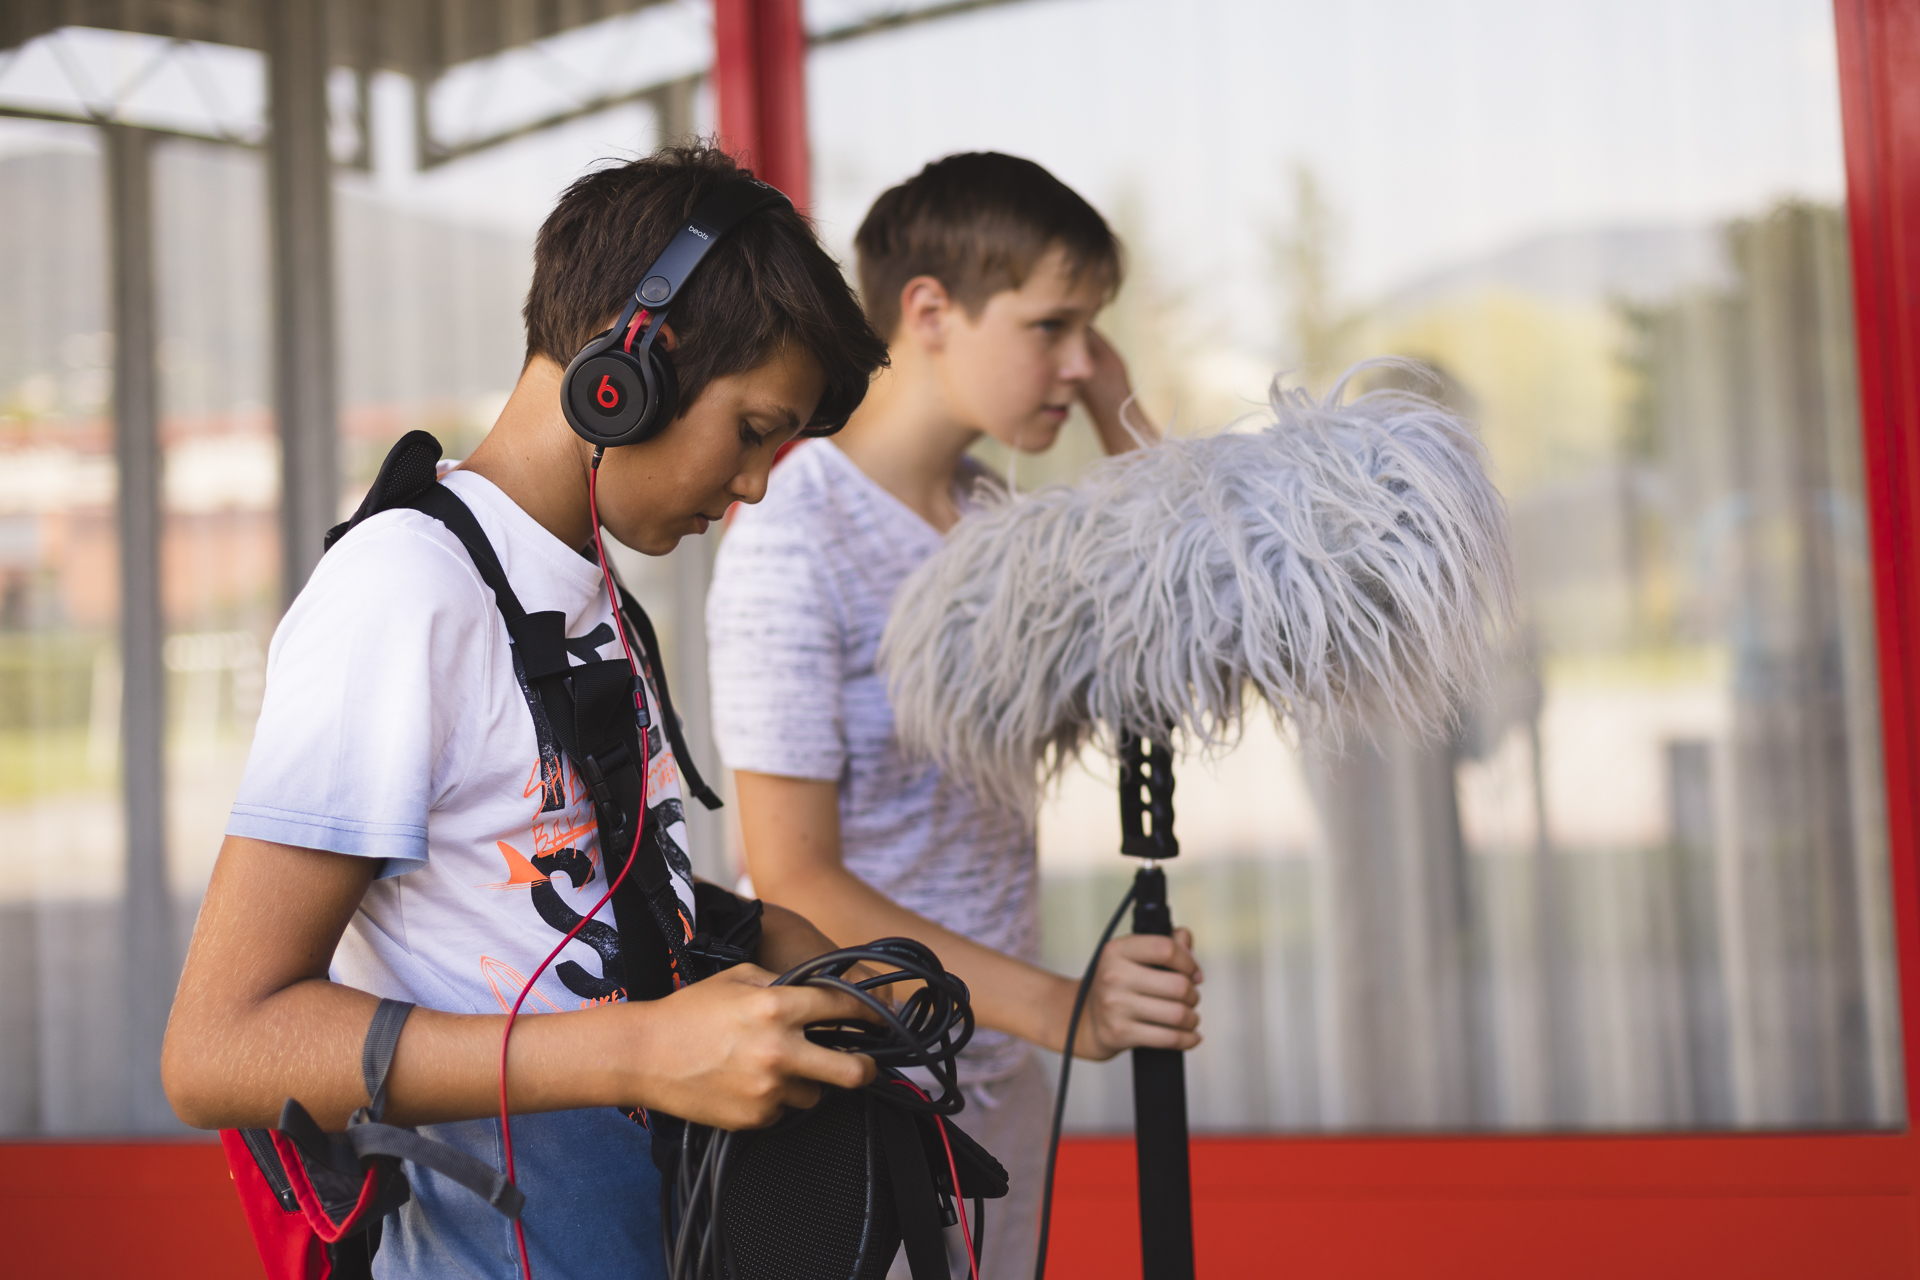 Mladostnika snemata avdio pri snemanju filma.